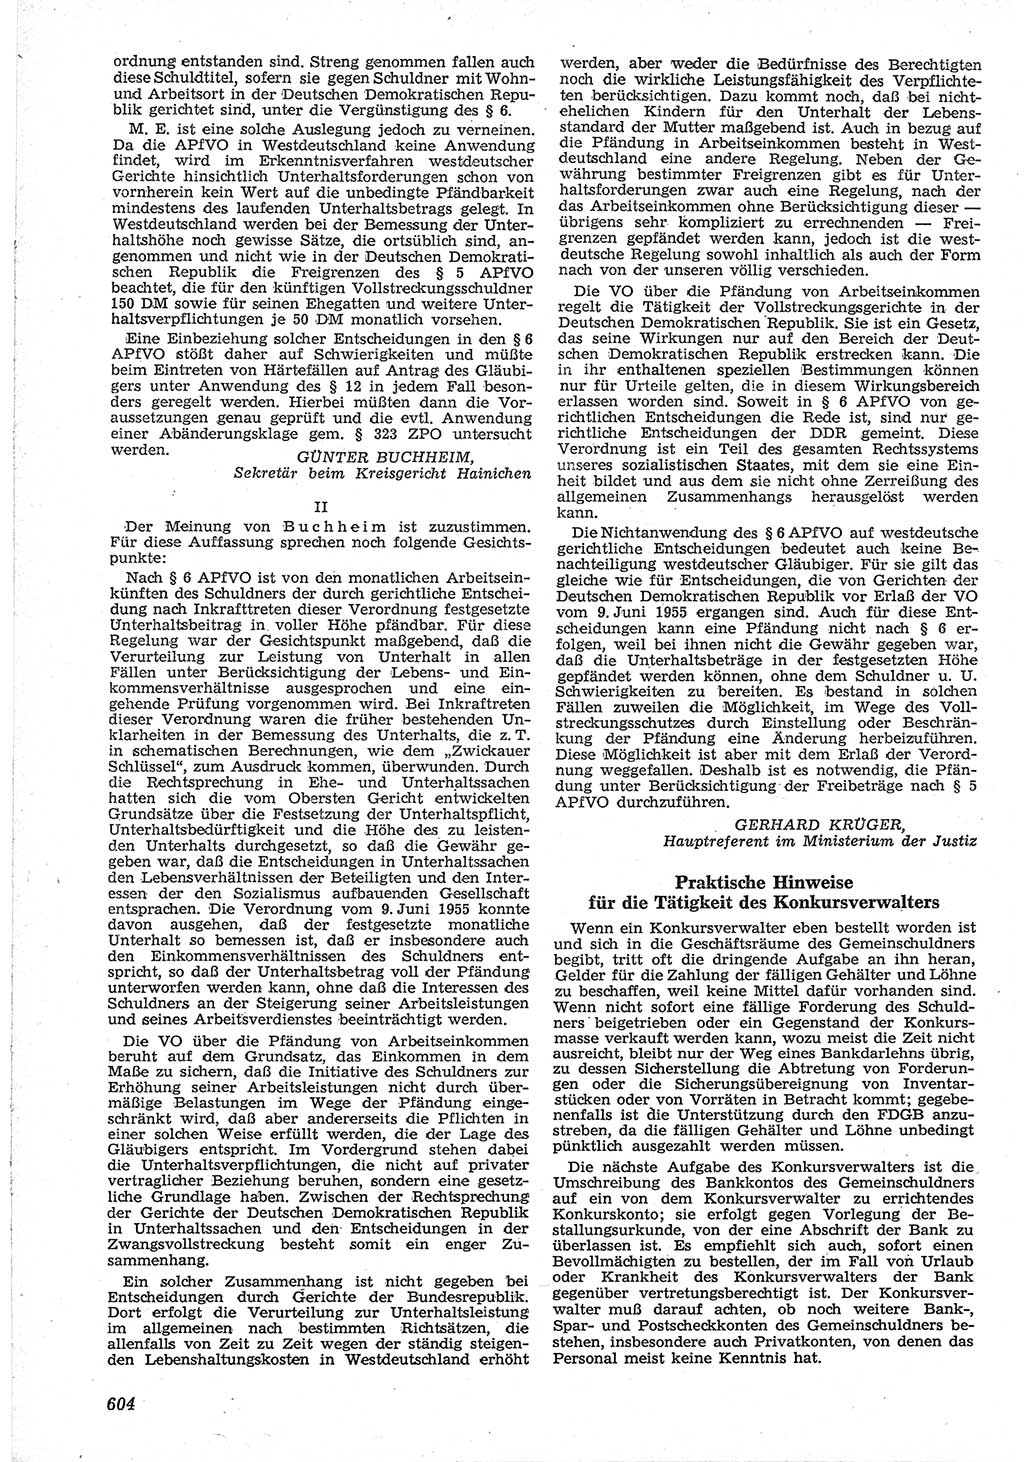 Neue Justiz (NJ), Zeitschrift für Recht und Rechtswissenschaft [Deutsche Demokratische Republik (DDR)], 12. Jahrgang 1958, Seite 604 (NJ DDR 1958, S. 604)